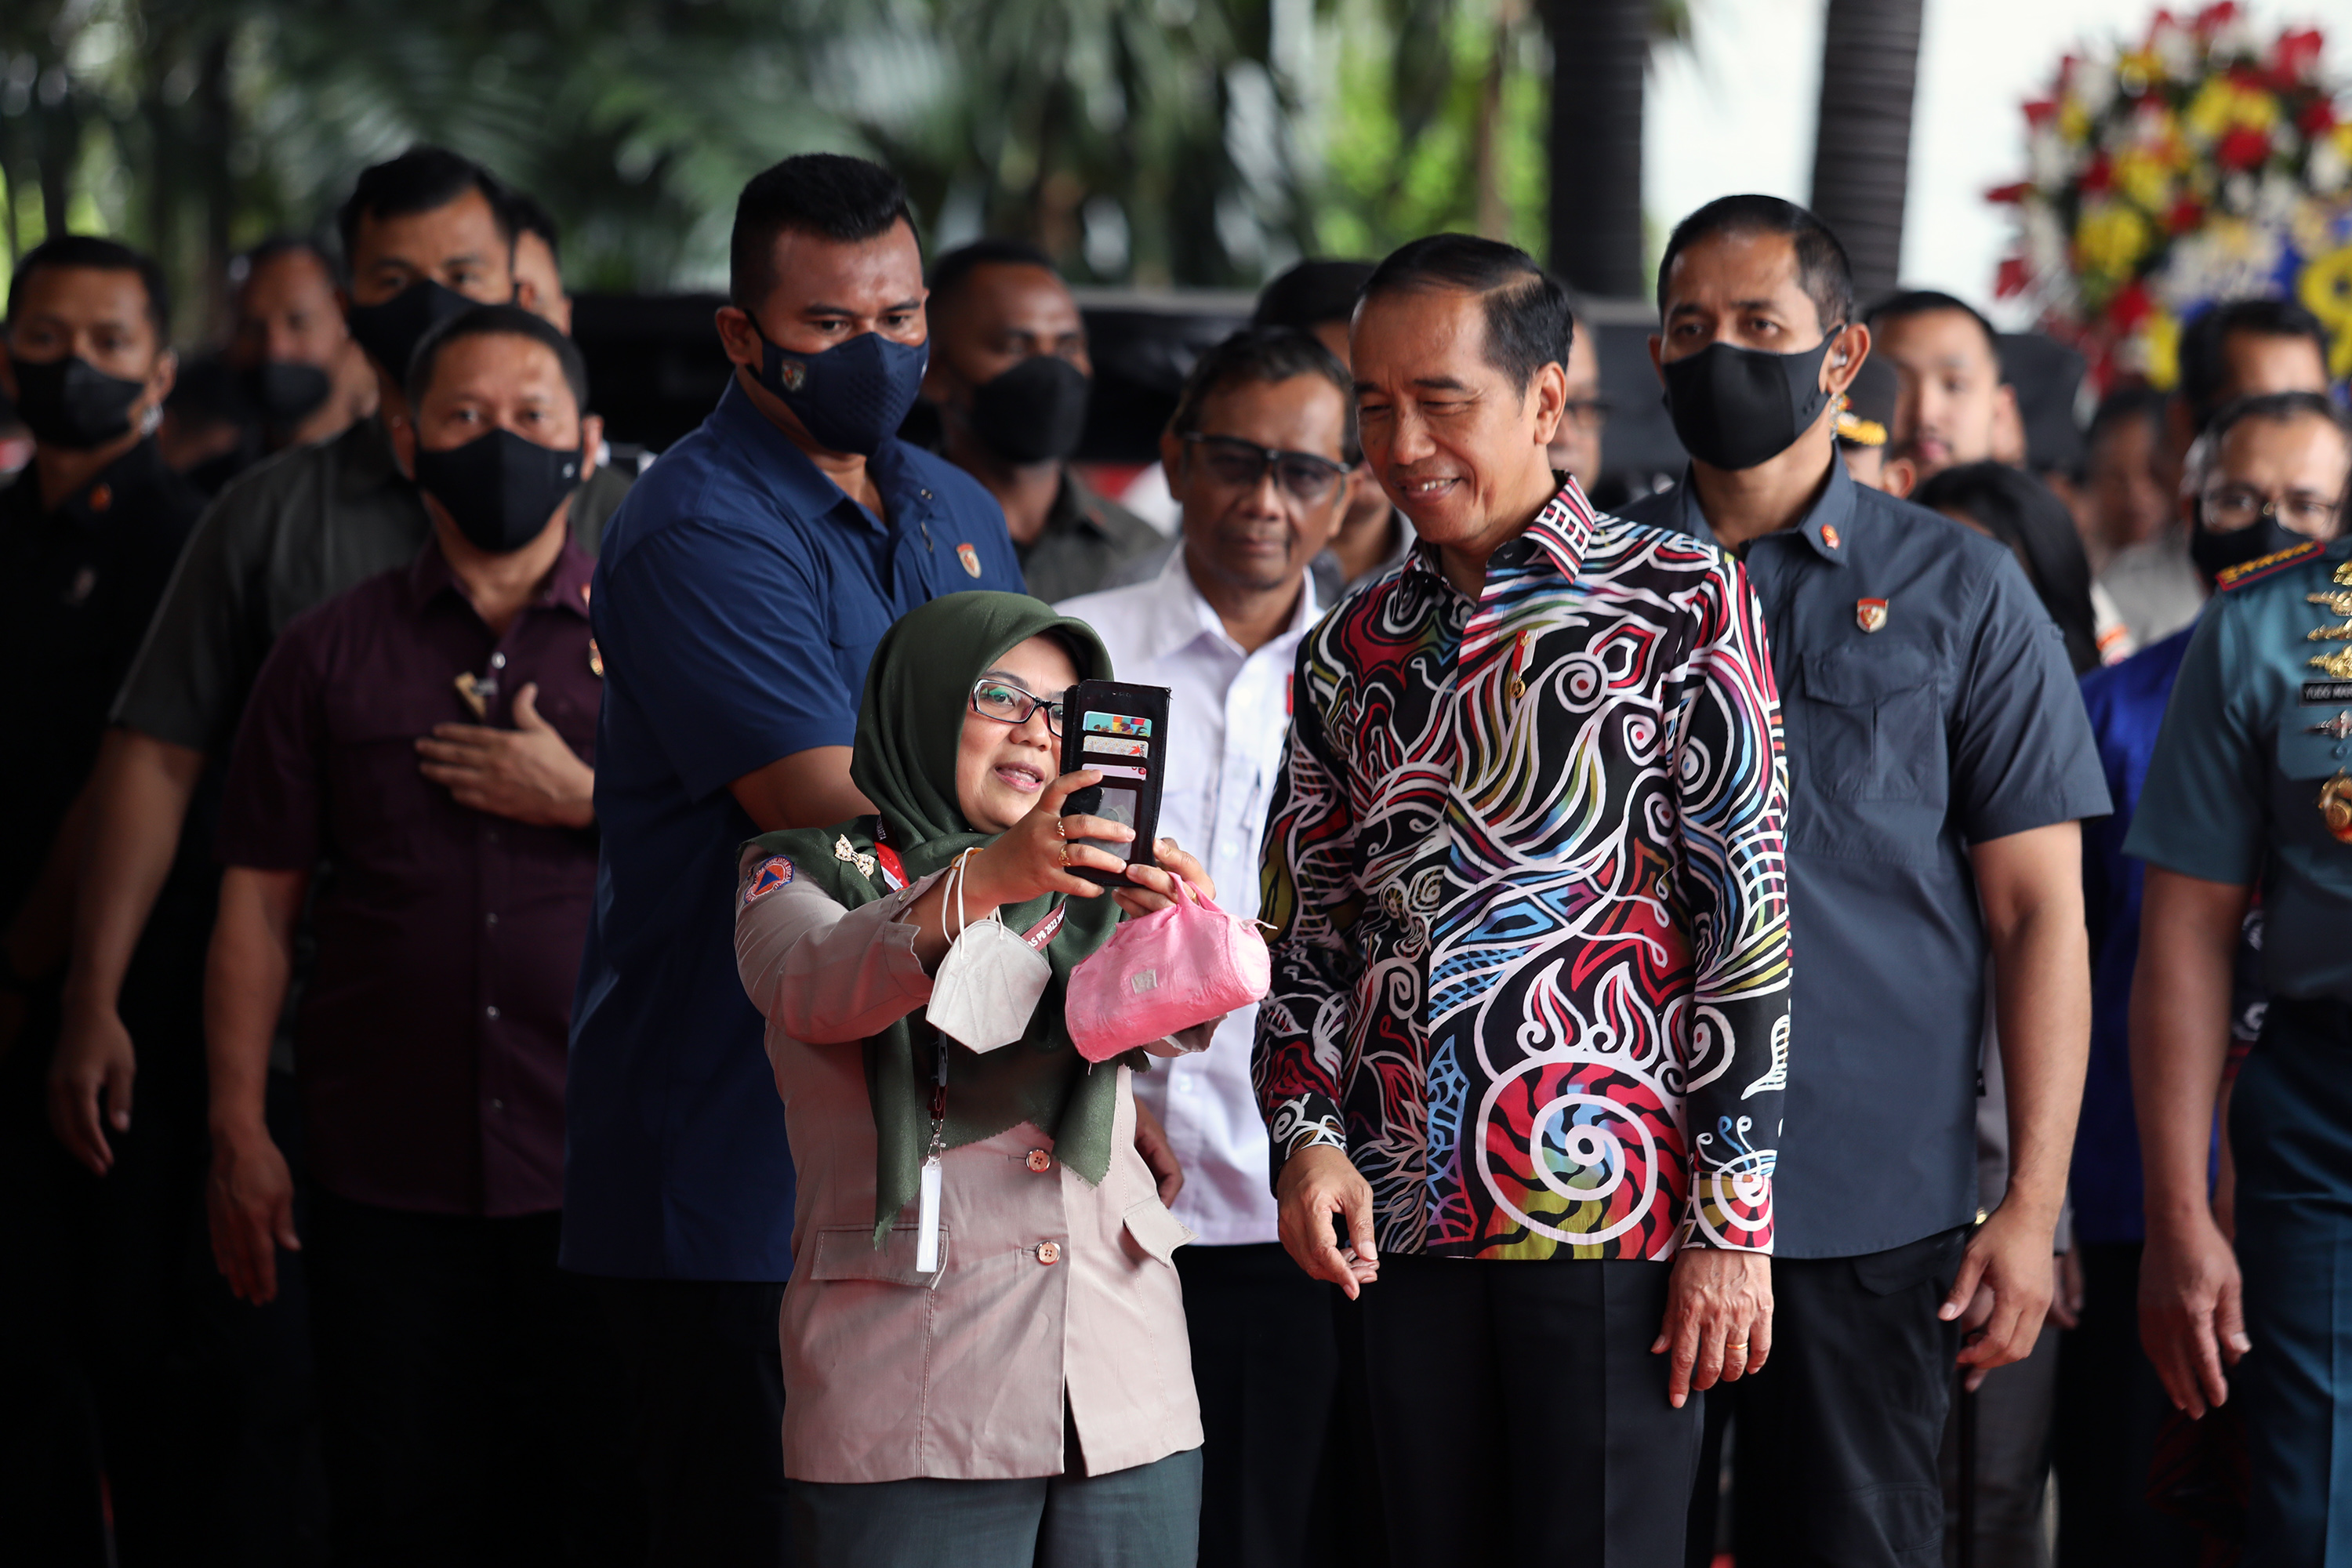 Presiden Joko Widodo (memakai batik) berswafoto bersama peserta dalam Rapat Koordinasi Nasional (Rakornas) Penanggulangan Bencana (PB) Badan Nasional Penanggulangan Bencana (BNPB) tahun 2023 telah digelar di Jakarta International Expo (JiExpo) Kemayoran, Jakarta Pusat, Kamis (2/3).